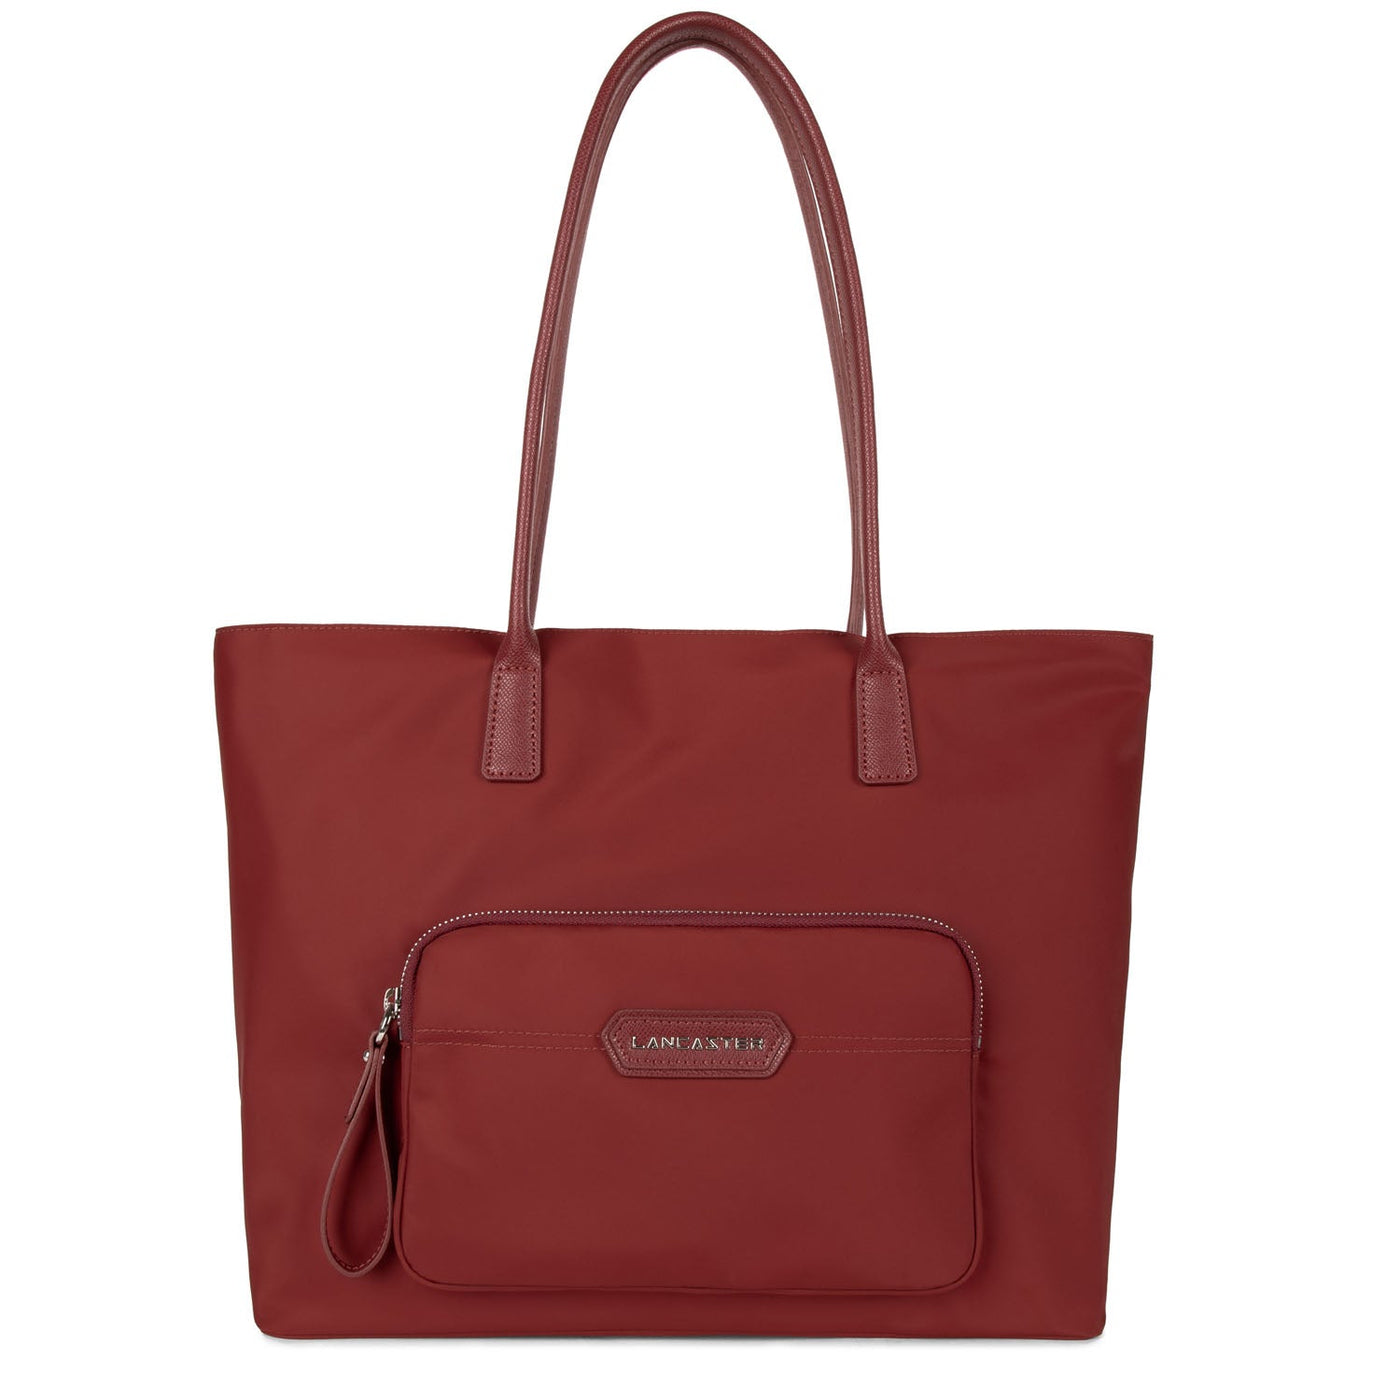 tote bag - basic premium #couleur_cerise